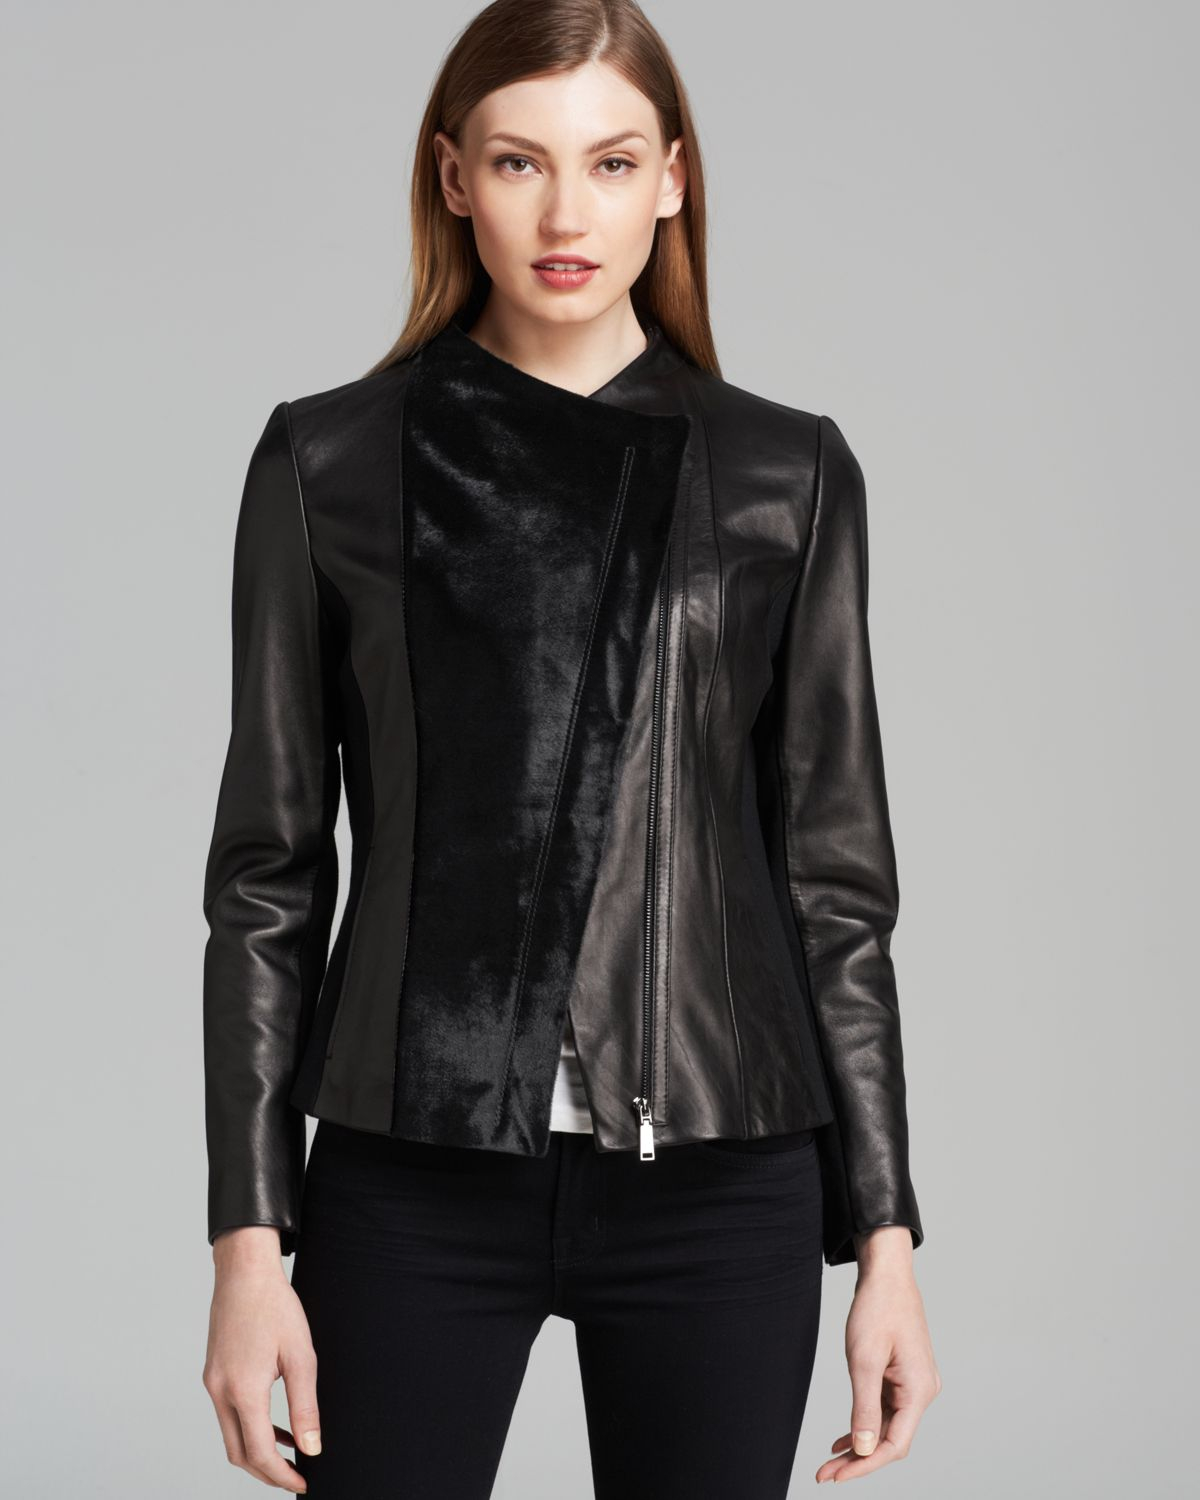 Lyst - Elie Tahari Leather Jacket - Ariel in Black